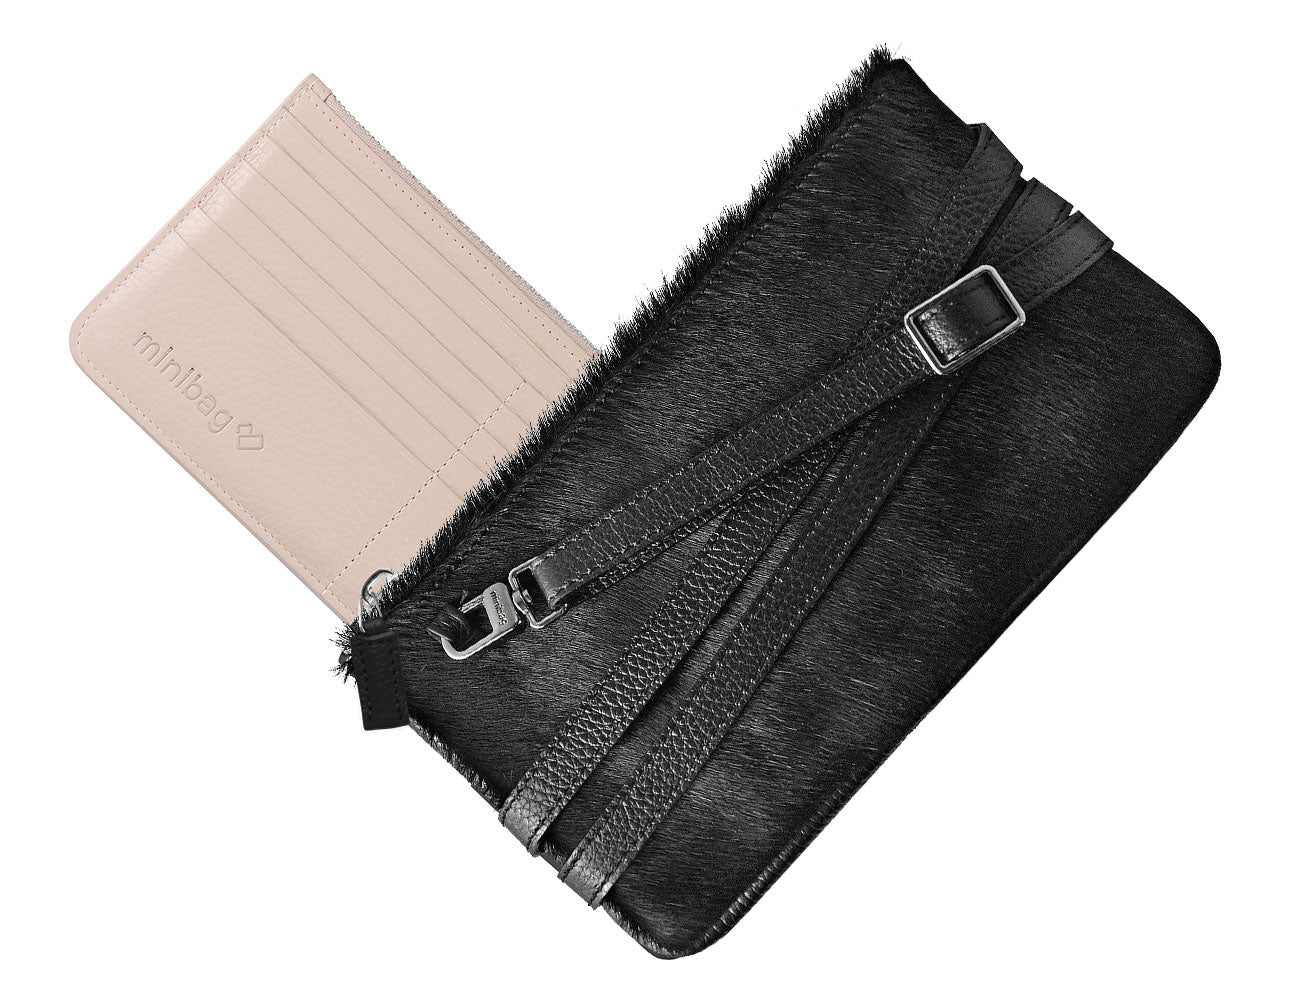 minibag Pelz black, Schwarze Pelztasche, Schwarze Clutch, Clutch aus Pelz, minibag Wallet nude